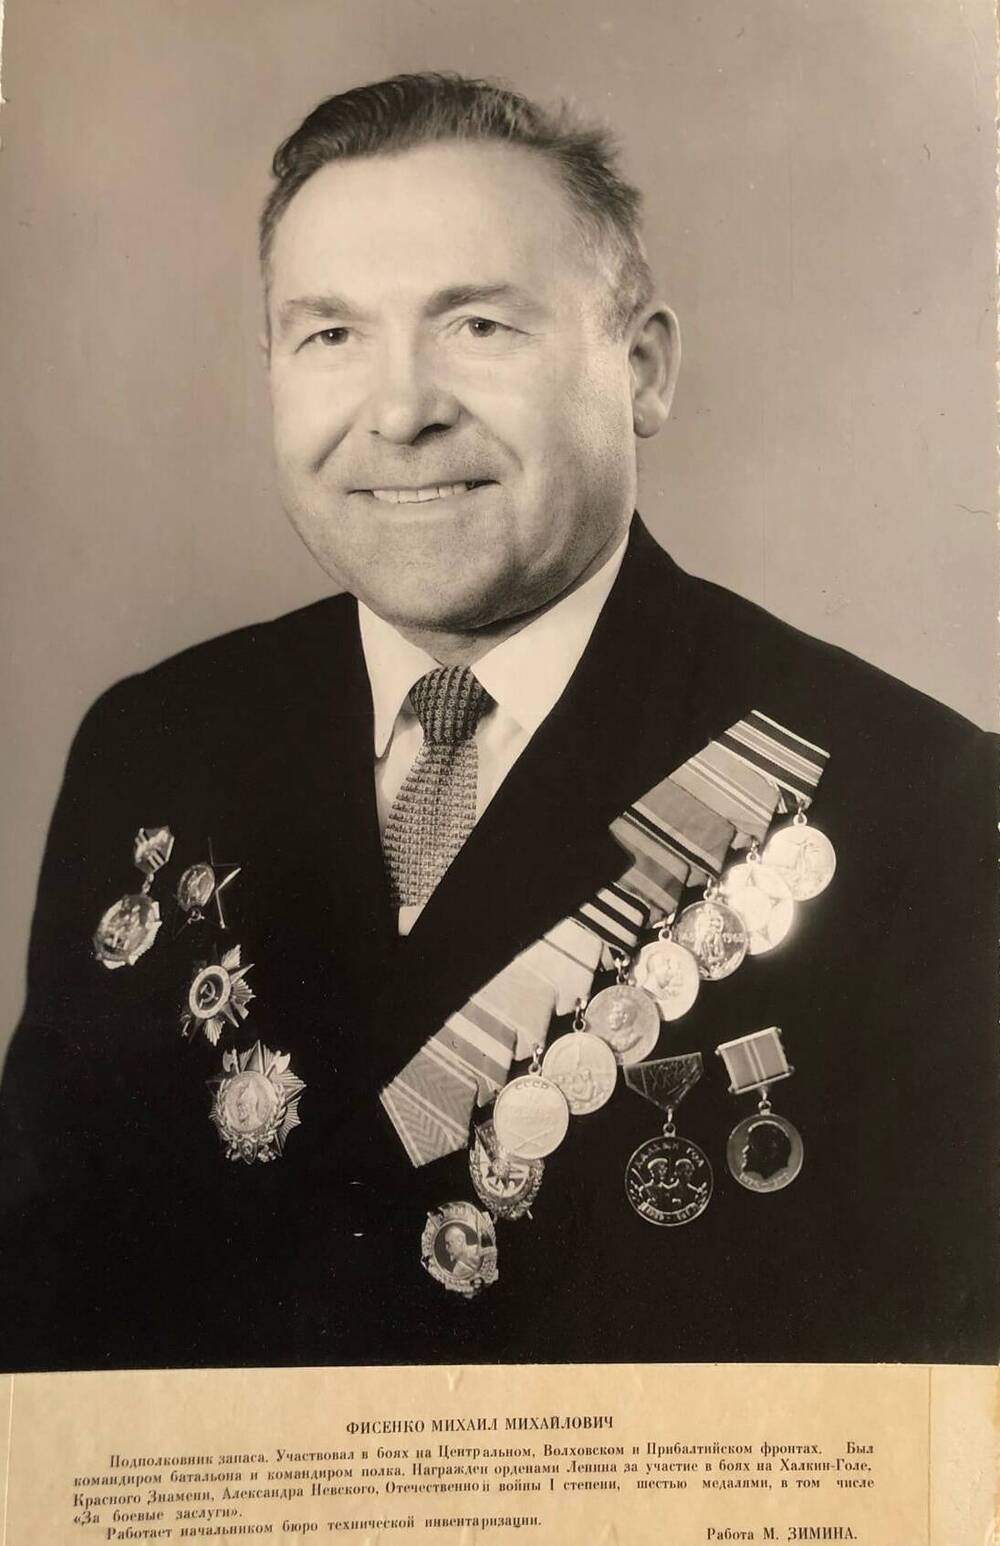 Фотография Фисенко Михаила Михайловича, участника Великой Отечественной войны 1941-1945 гг.